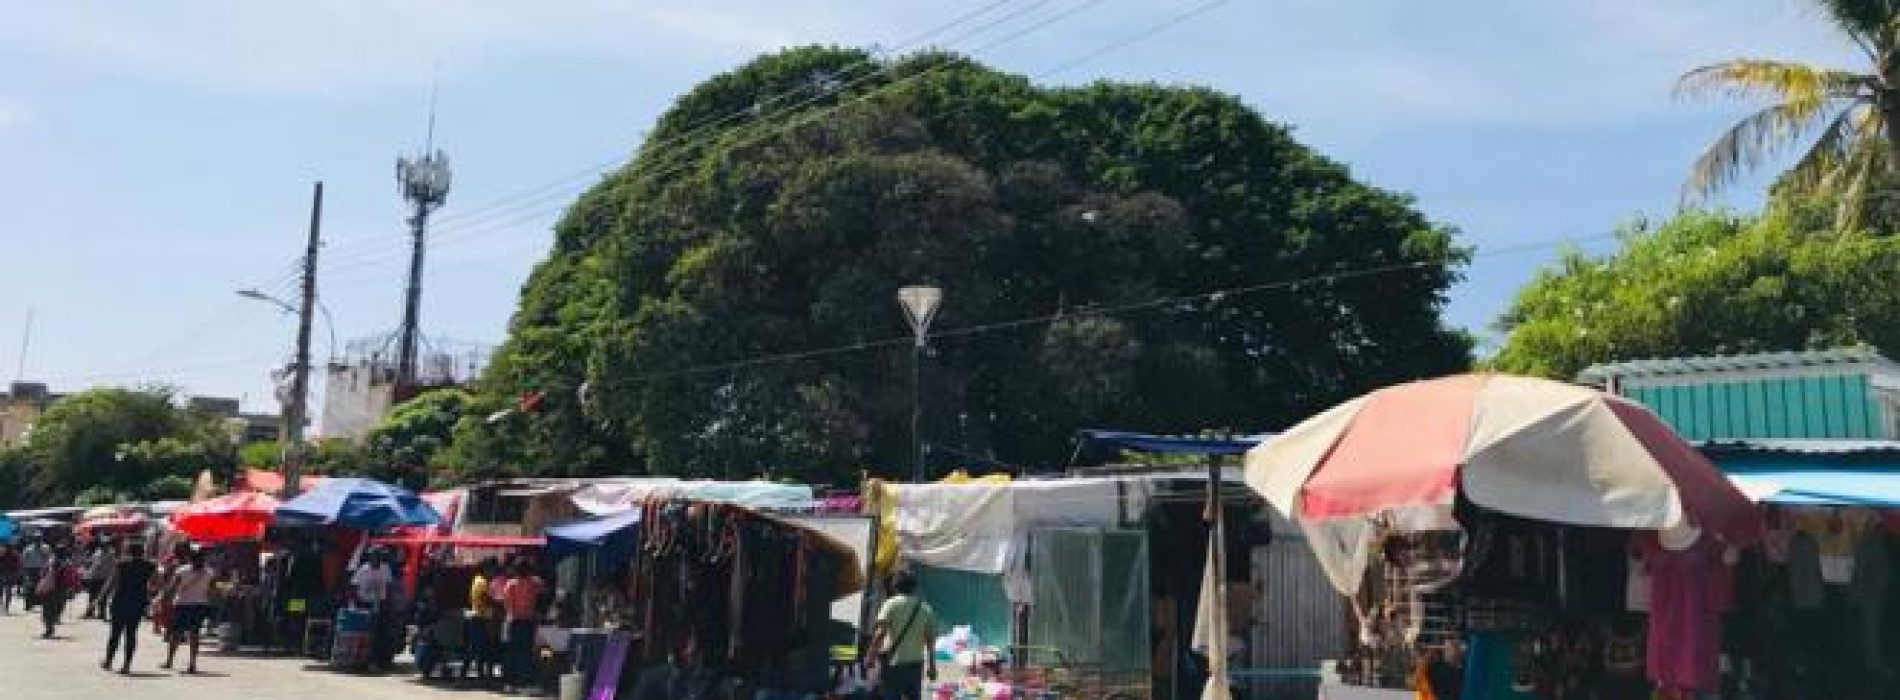 Abrirán mercado de Juchitán tras su reconstrucción